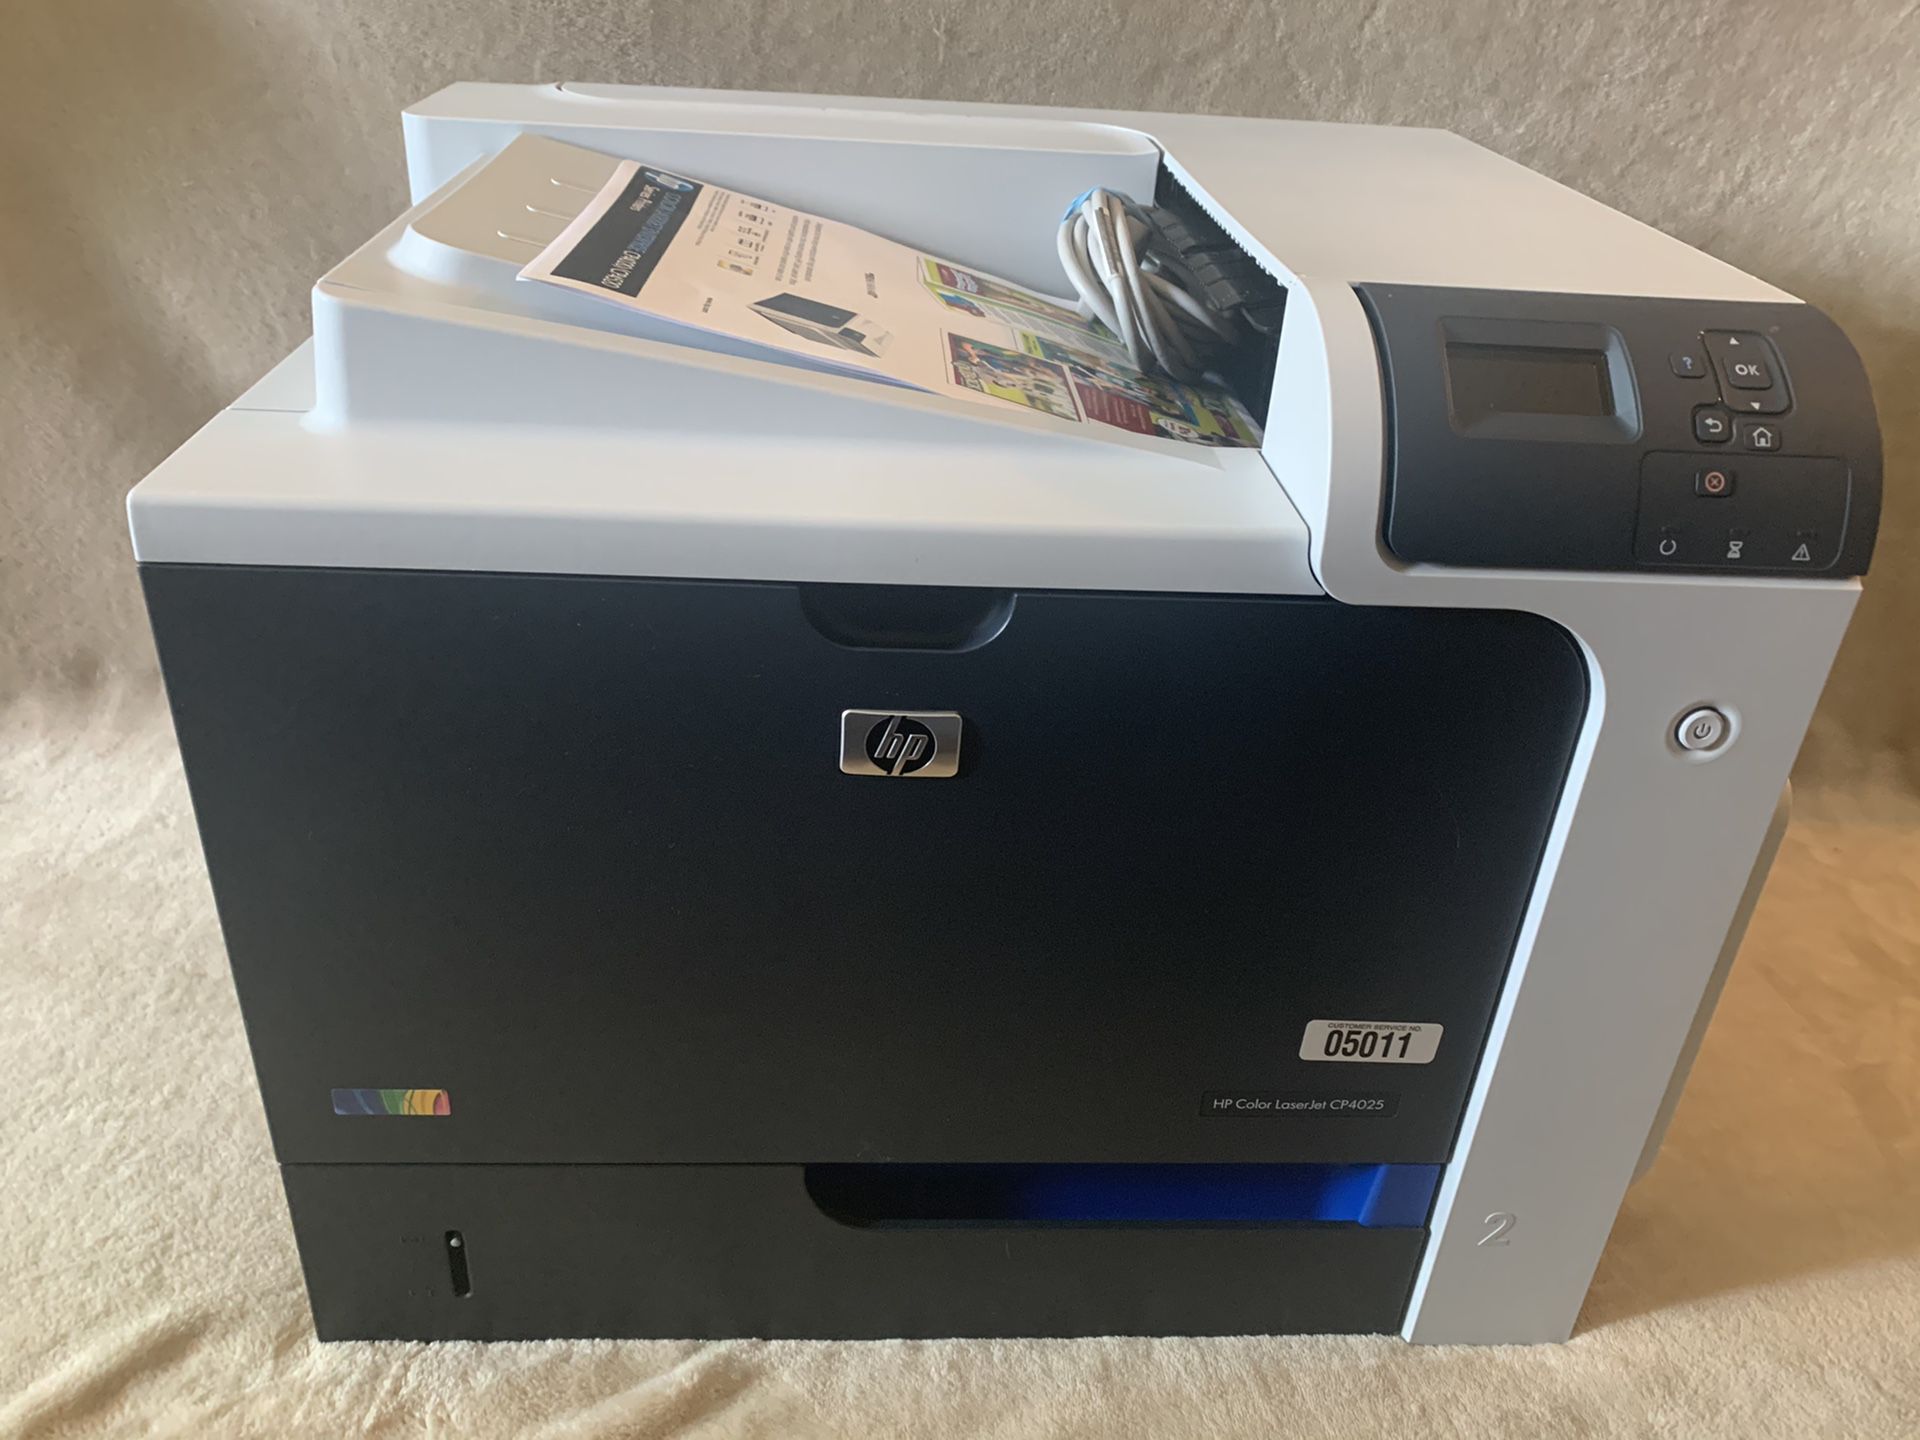 HP Color LaserJet CP4025 Tested